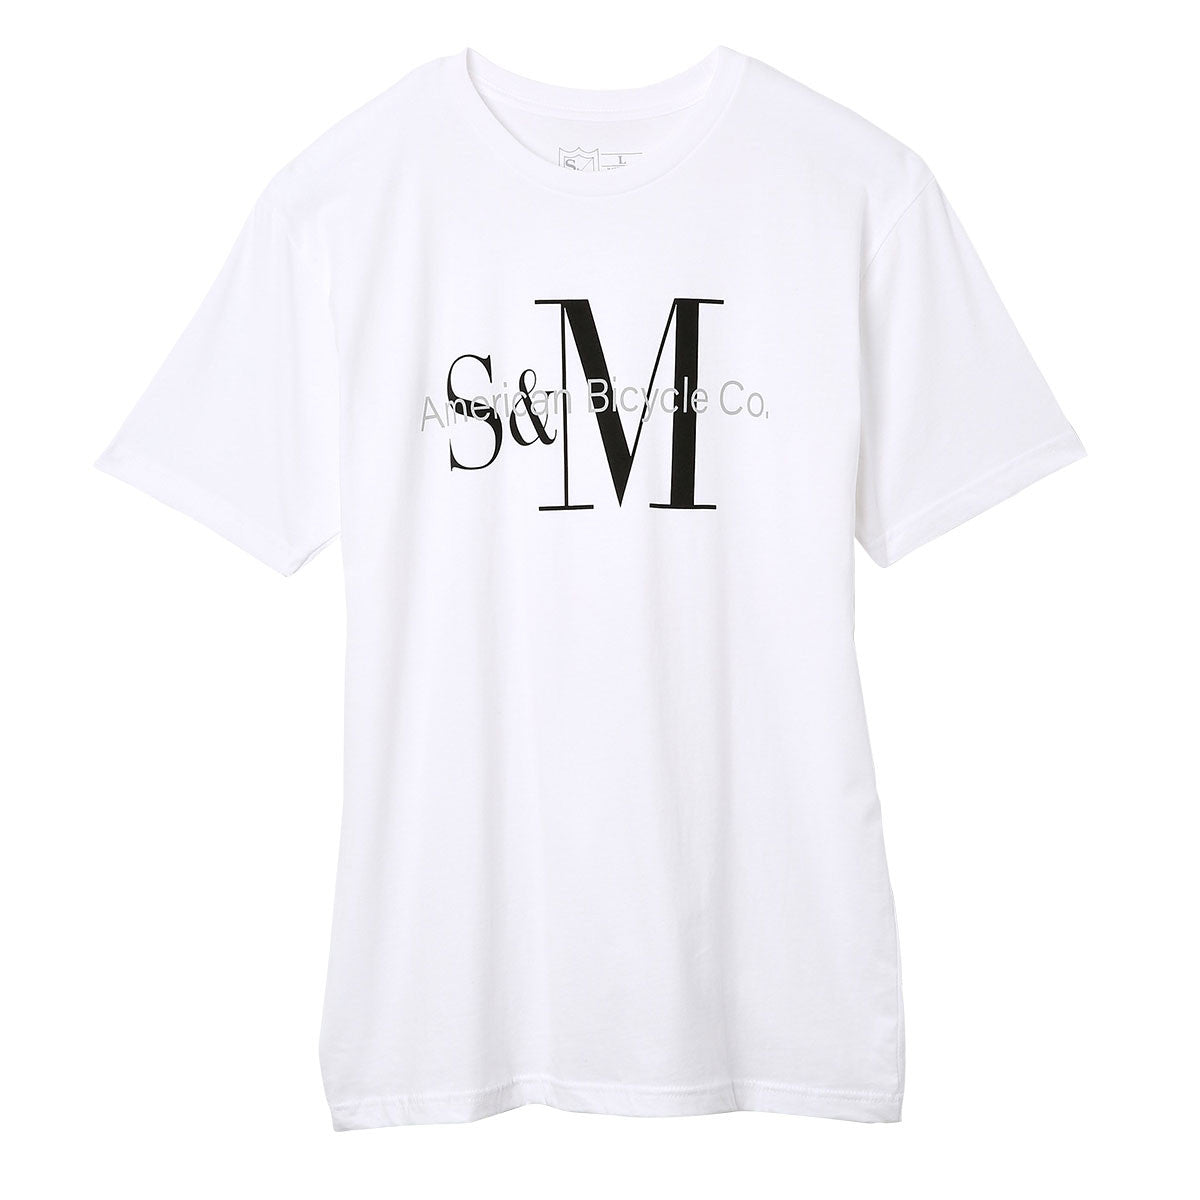 S&M Decline T-shirt